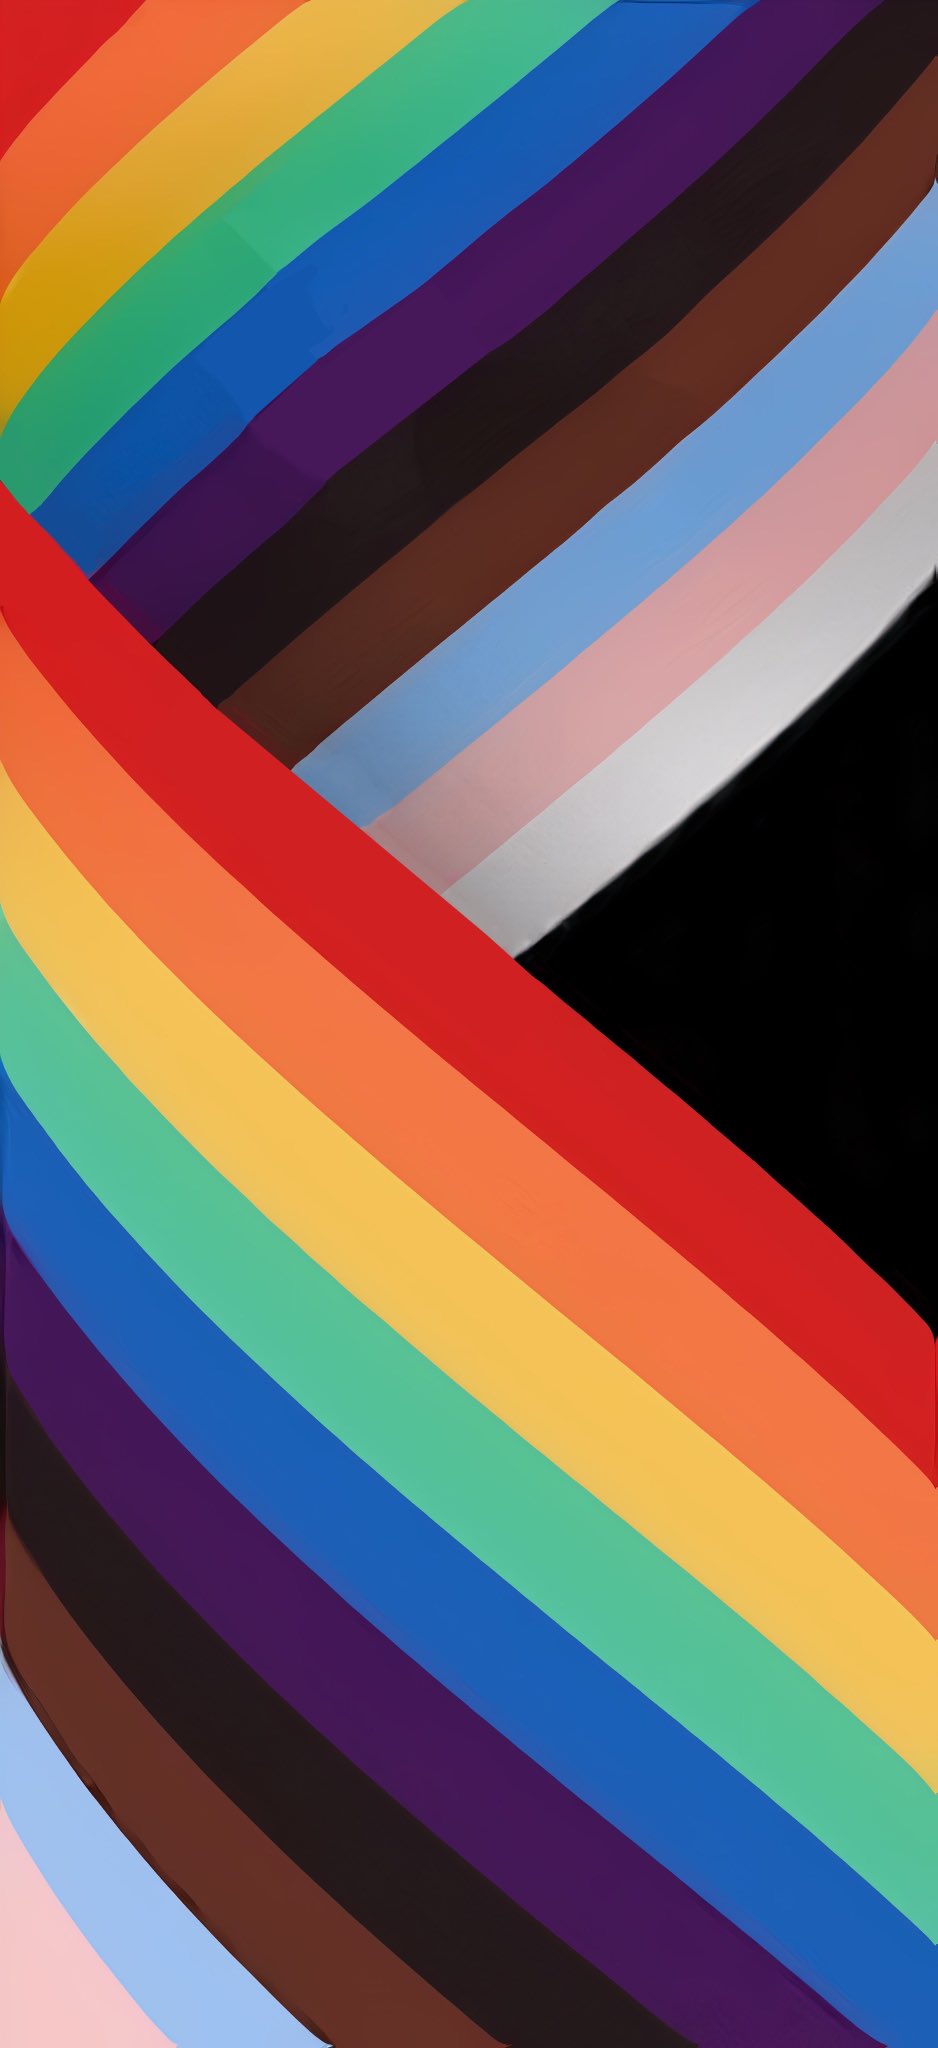 Nếu bạn đang tìm kiếm một hình nền thú vị và đầy cảm hứng, iOS 16 Pride Wallpaper sẽ là sự lựa chọn hoàn hảo cho bạn. Với các màu sắc chói lóa và thông điệp ý nghĩa về tình yêu đồng tính, chúng sẽ giúp bạn thể hiện quan điểm và sự ủng hộ cho cộng đồng LGBTQ.